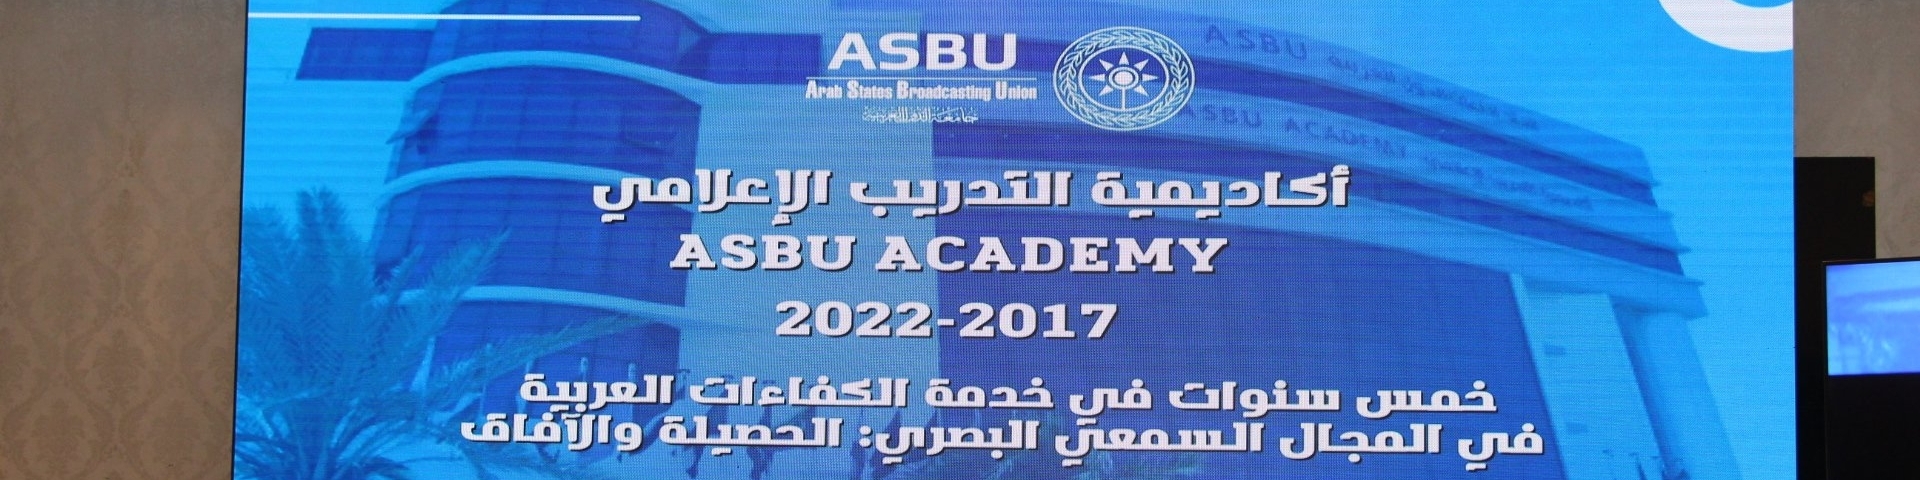 أكاديمية التدريب الاعلامي لاتحاد اذاعات الدول العربية تحتفل بمرور خمس سنوات على انشائها 